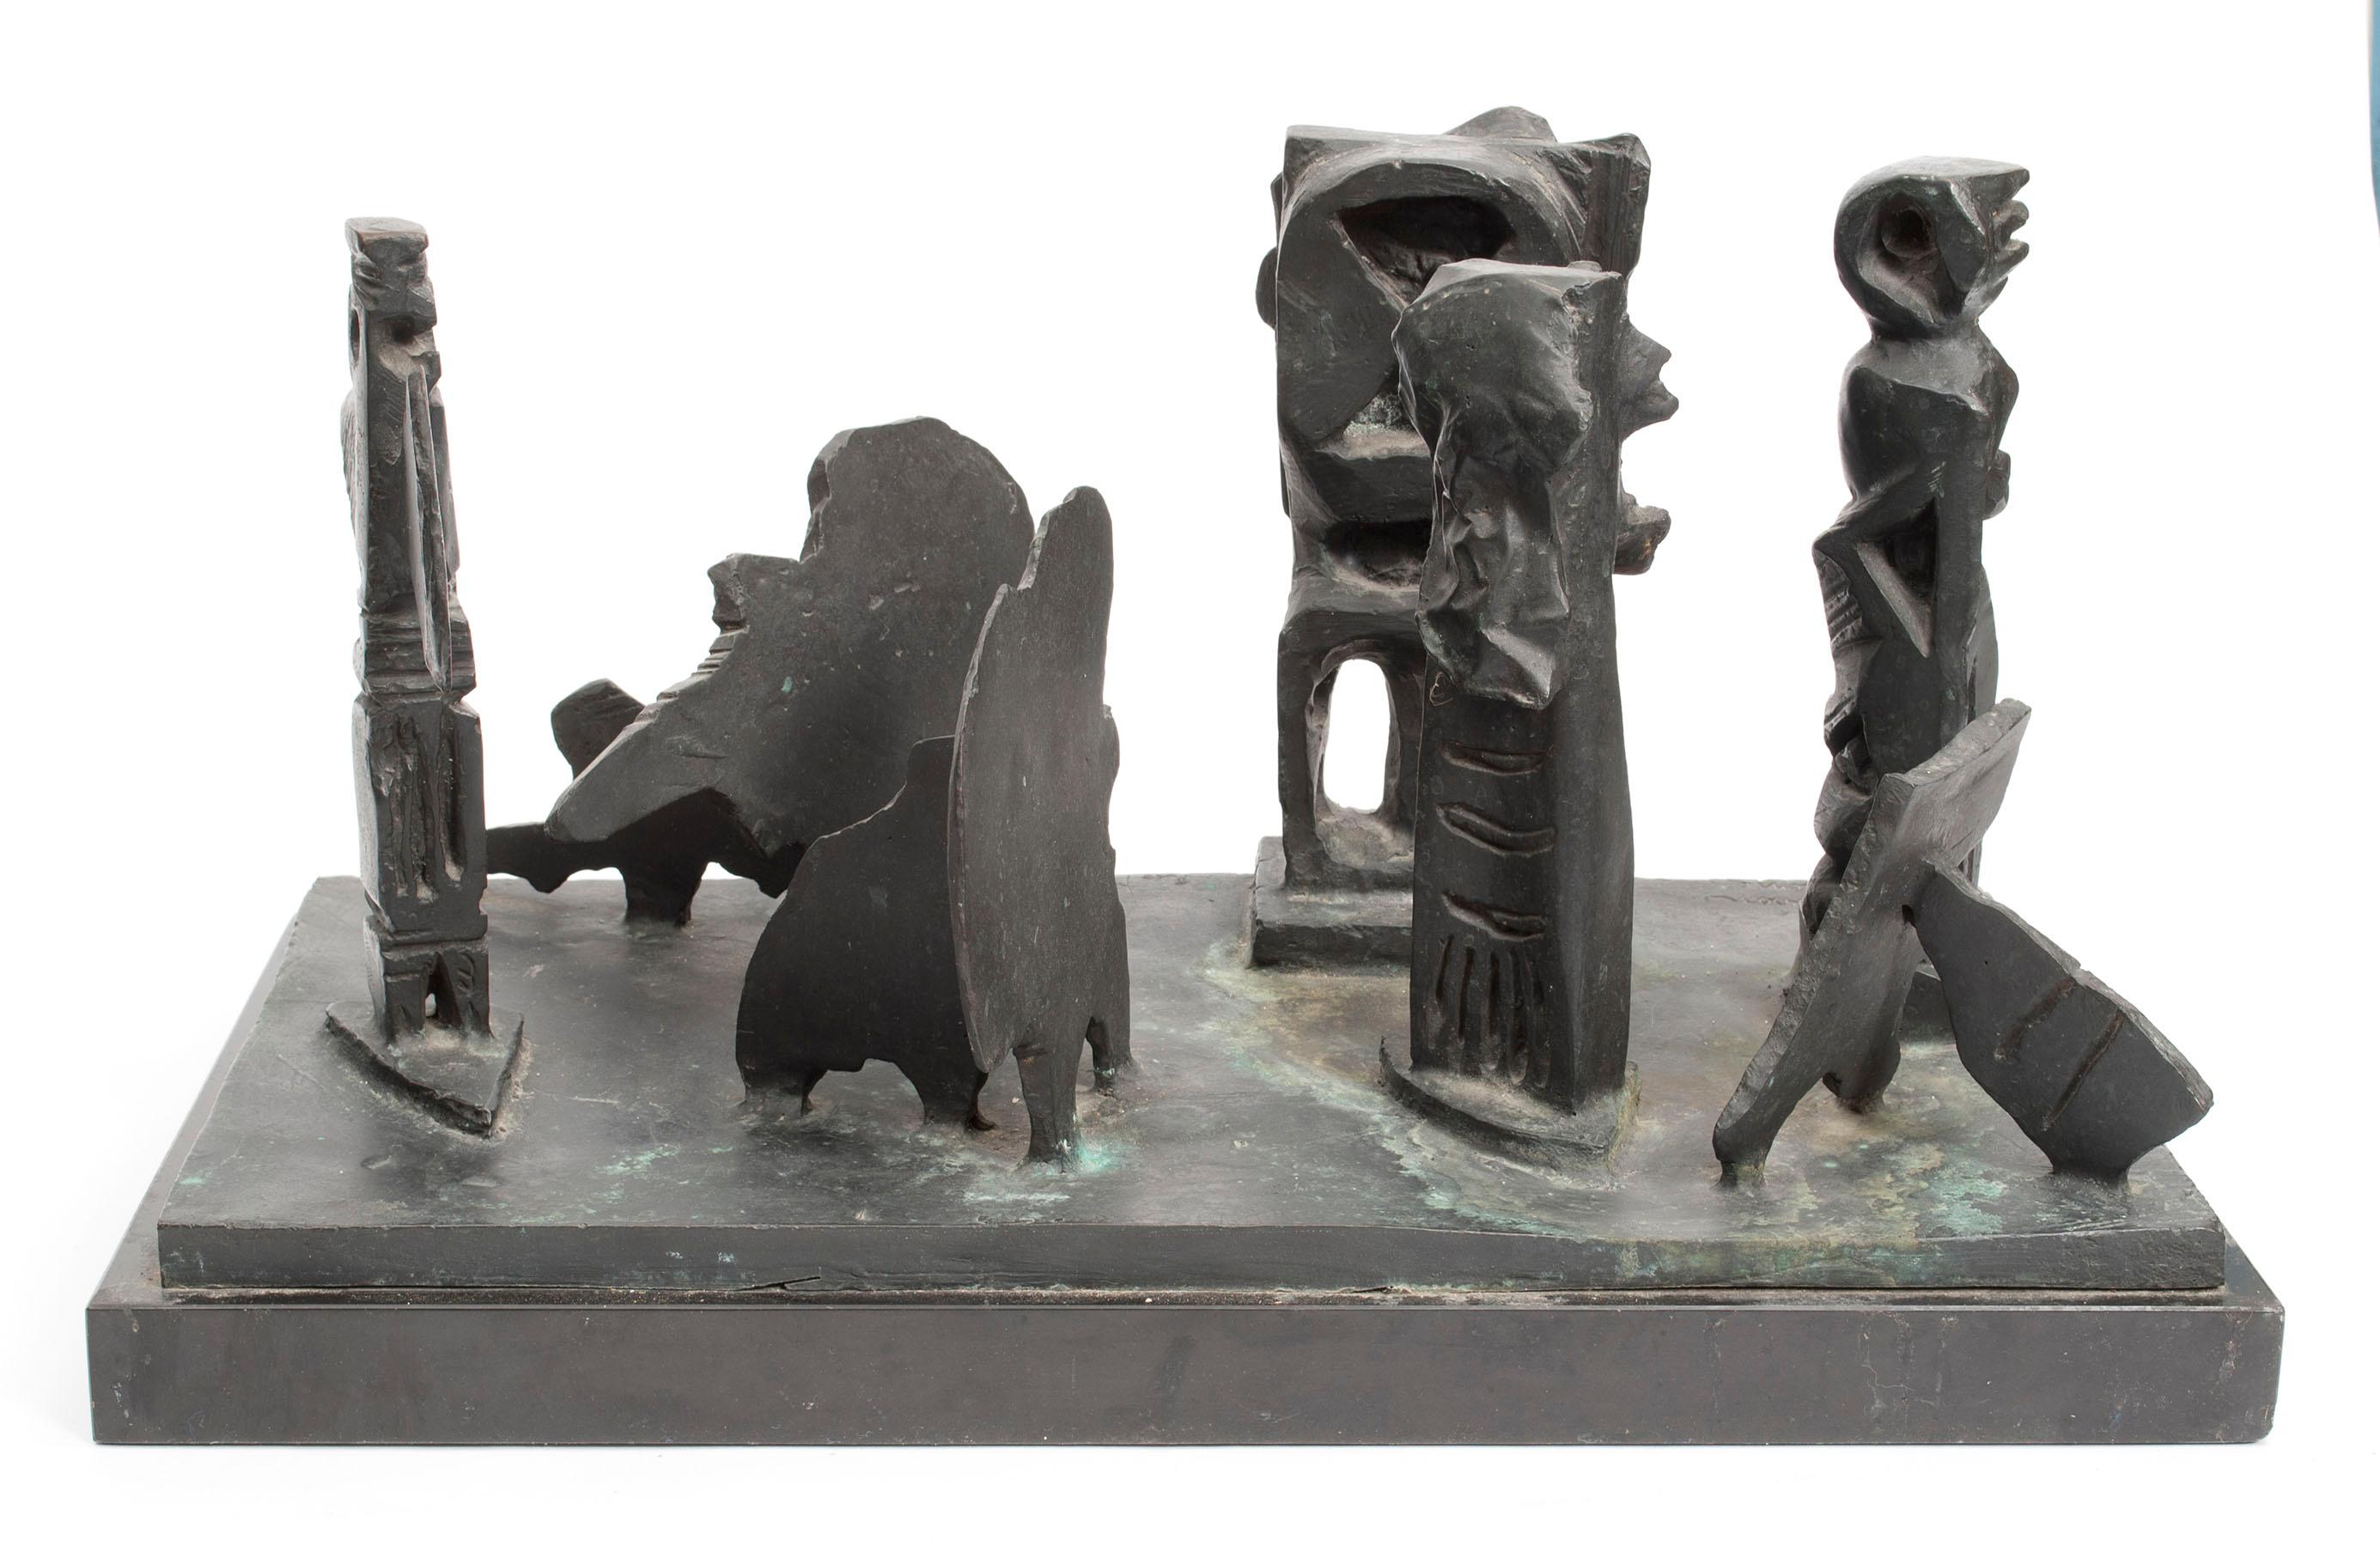 Abbott Pattison Abstract Sculpture - Brutalist Modern Abstract Bronze Sculpture Metropolis Manner of Louise Nevelson